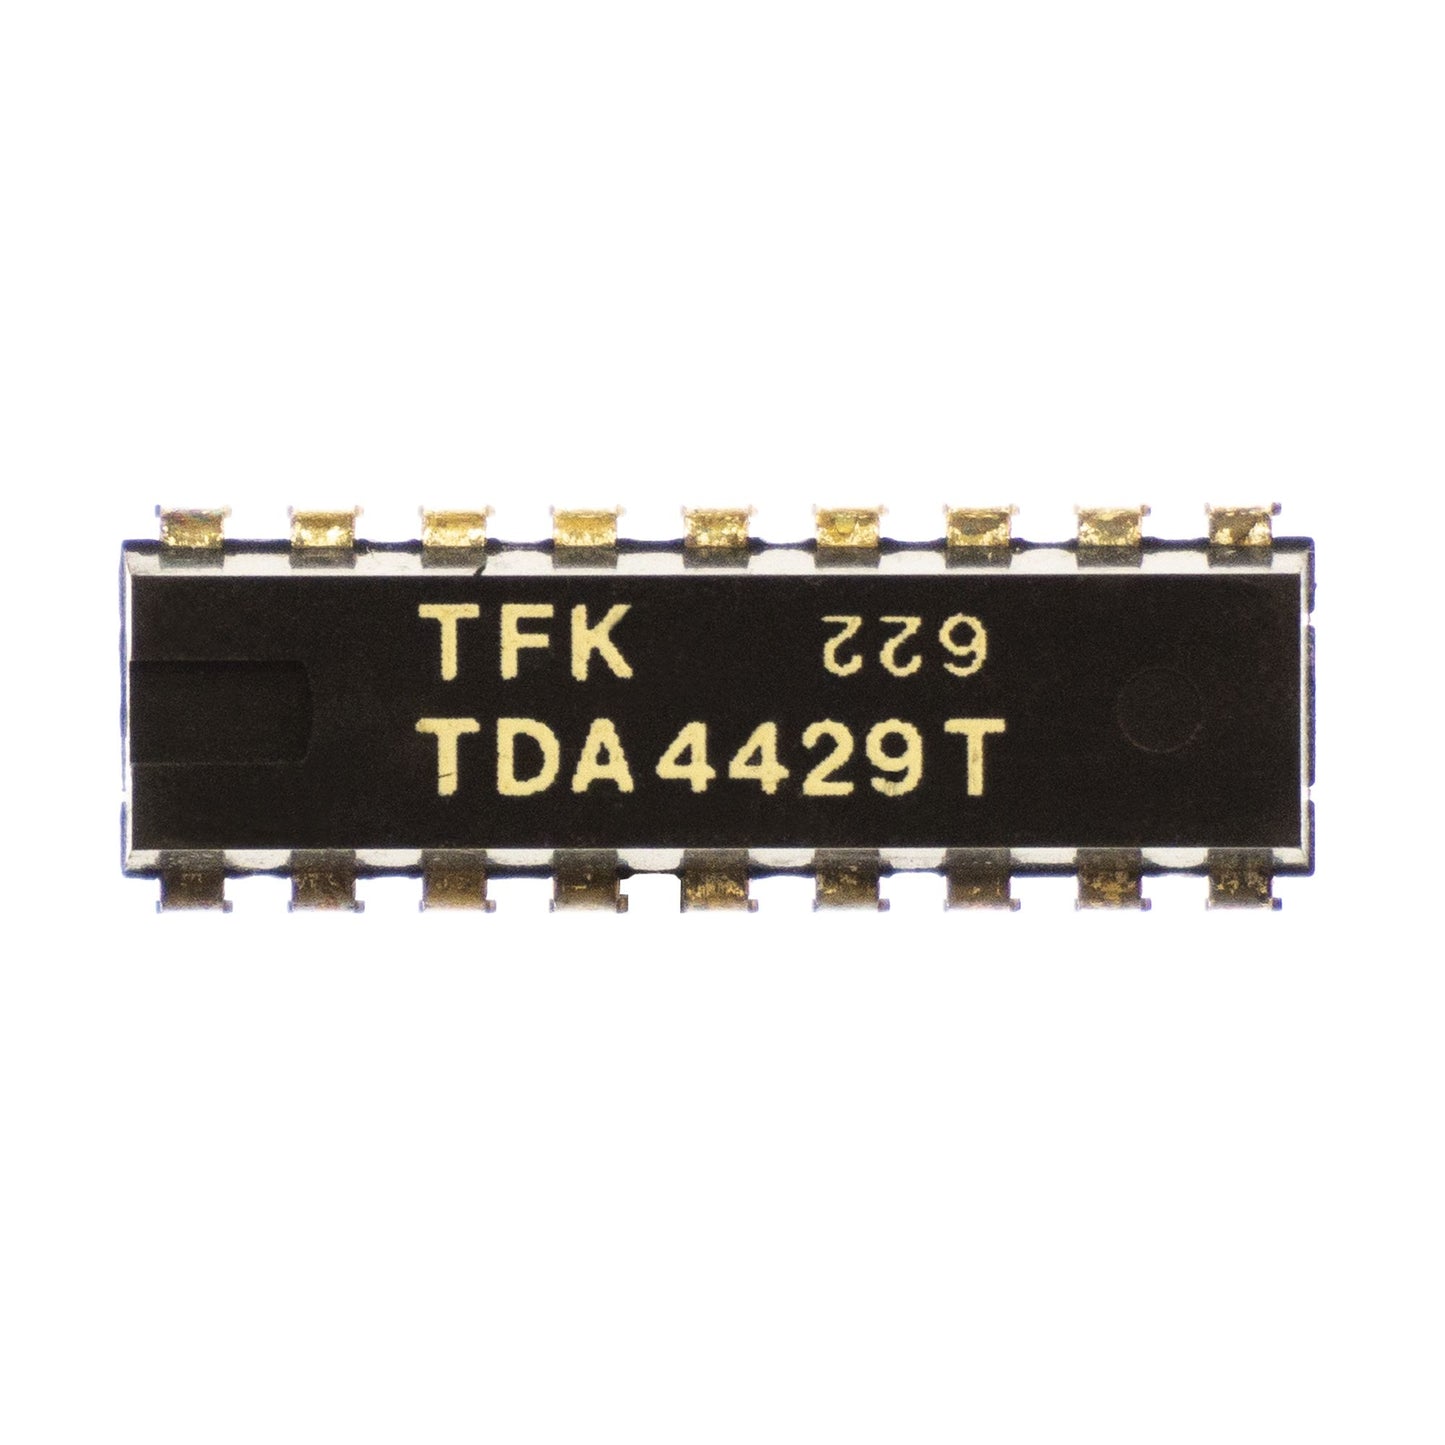 TDA4429T componente elettronico, circuito integrato, transistor, 18 contatti